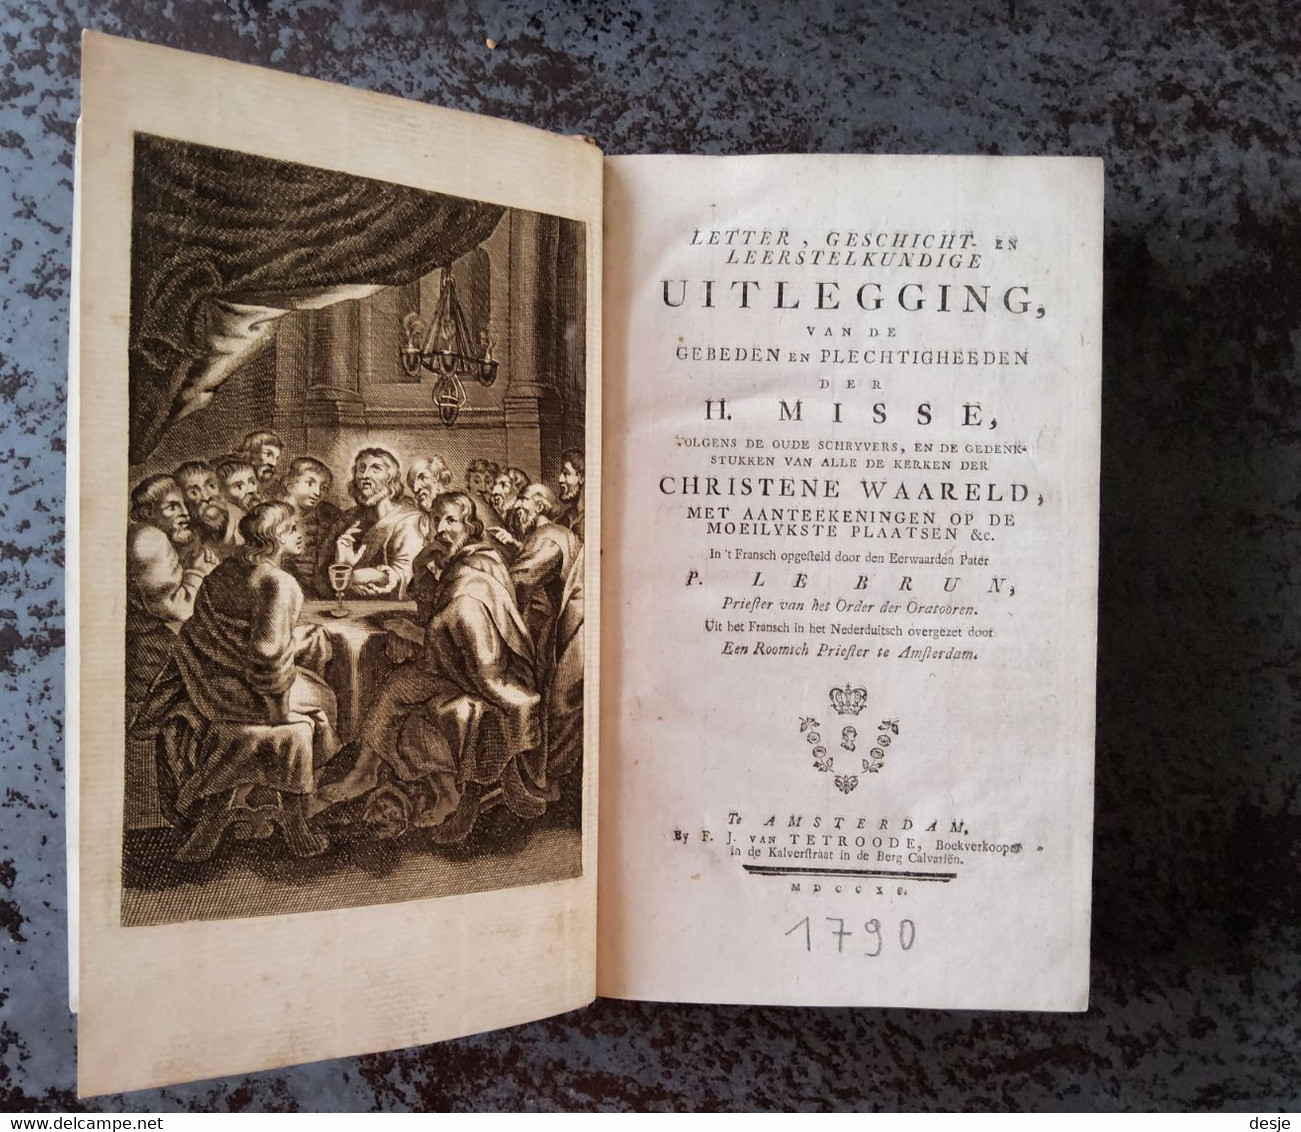 Uitlegging Van De Gebeden En Plechtigheden Der H. Misse Door P. Le Brun, 733 Blz., Amsterdam, 1790 - Anciens